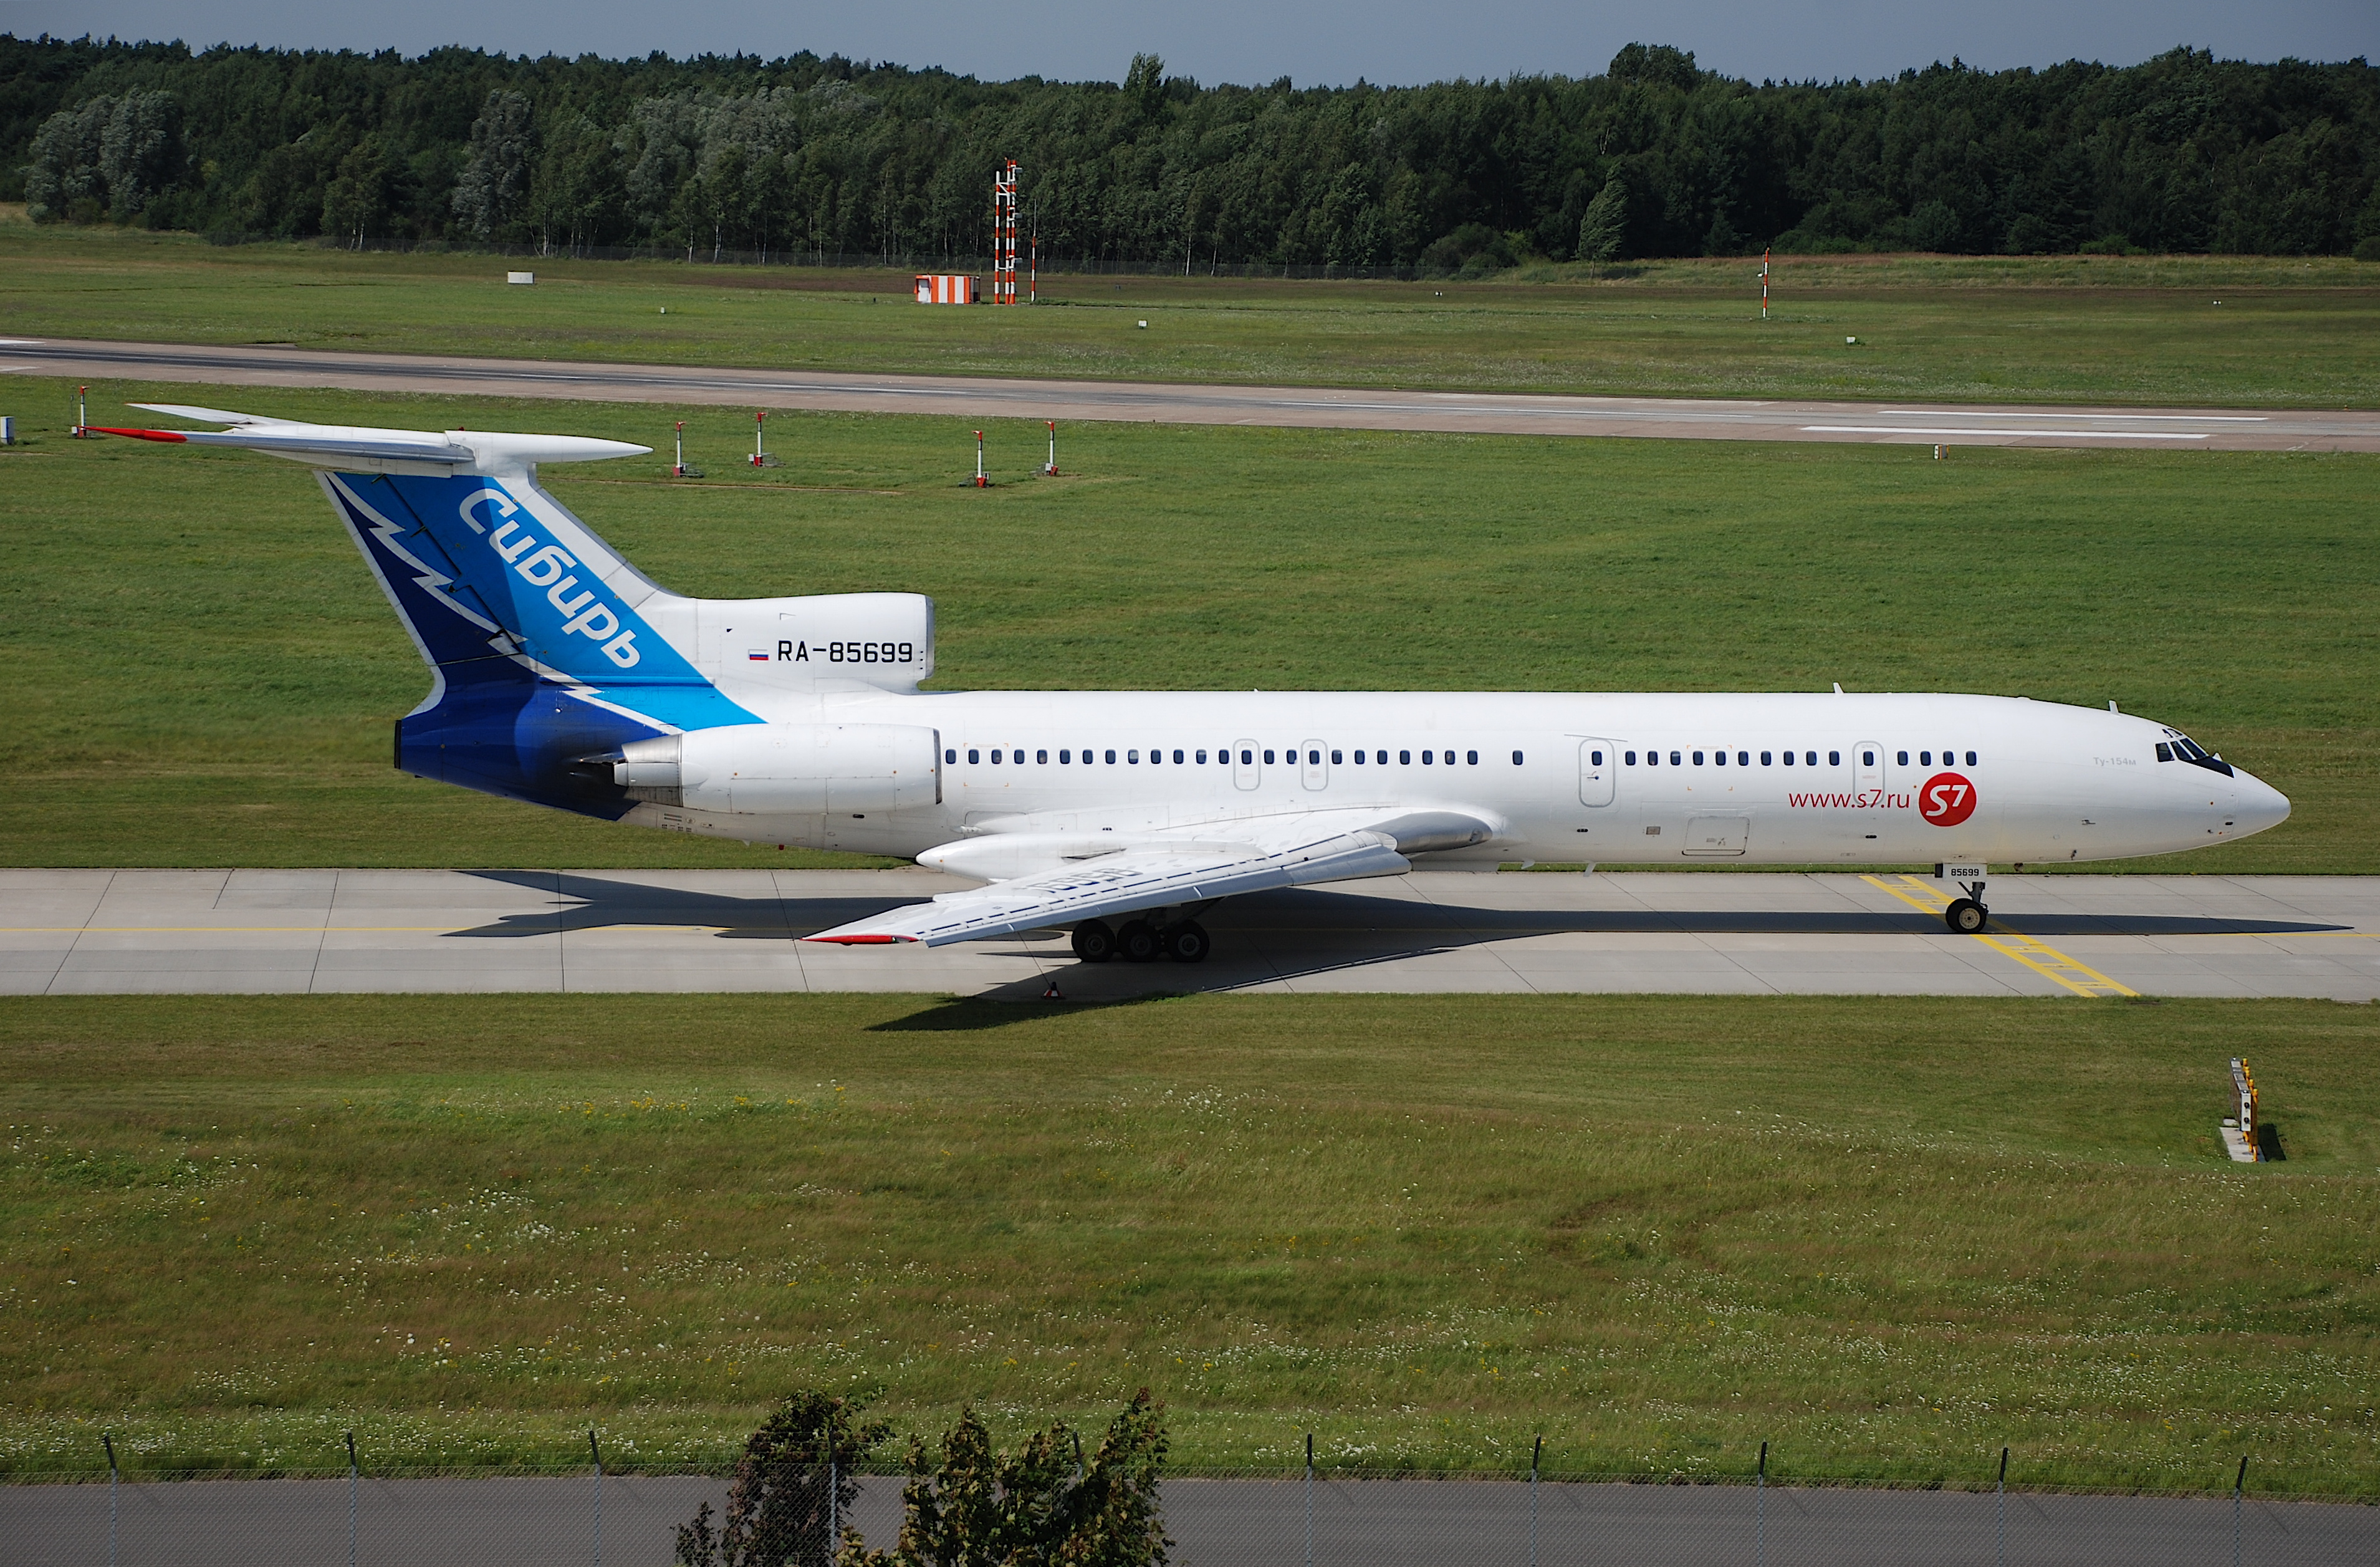 S7 Airlines Tupolev 154, RA-85699@HAJ,27.07.2007-481hi - Flickr - Aero Icarus